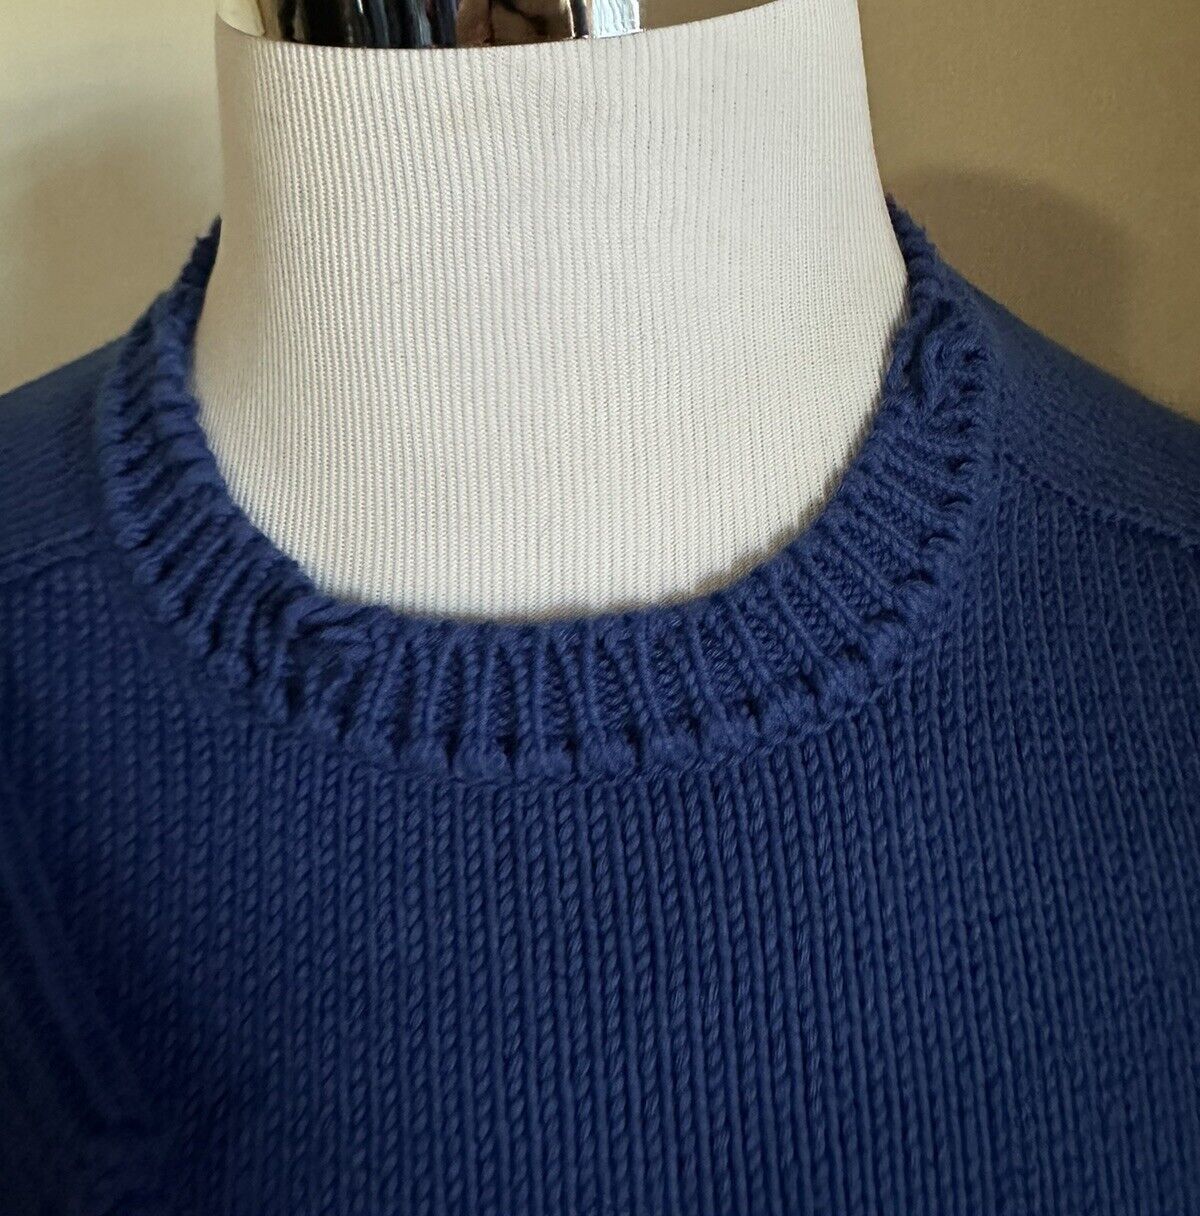 NWT $890 Saint Laurent Men’s Crewneck Sweater Blue Size L Italy